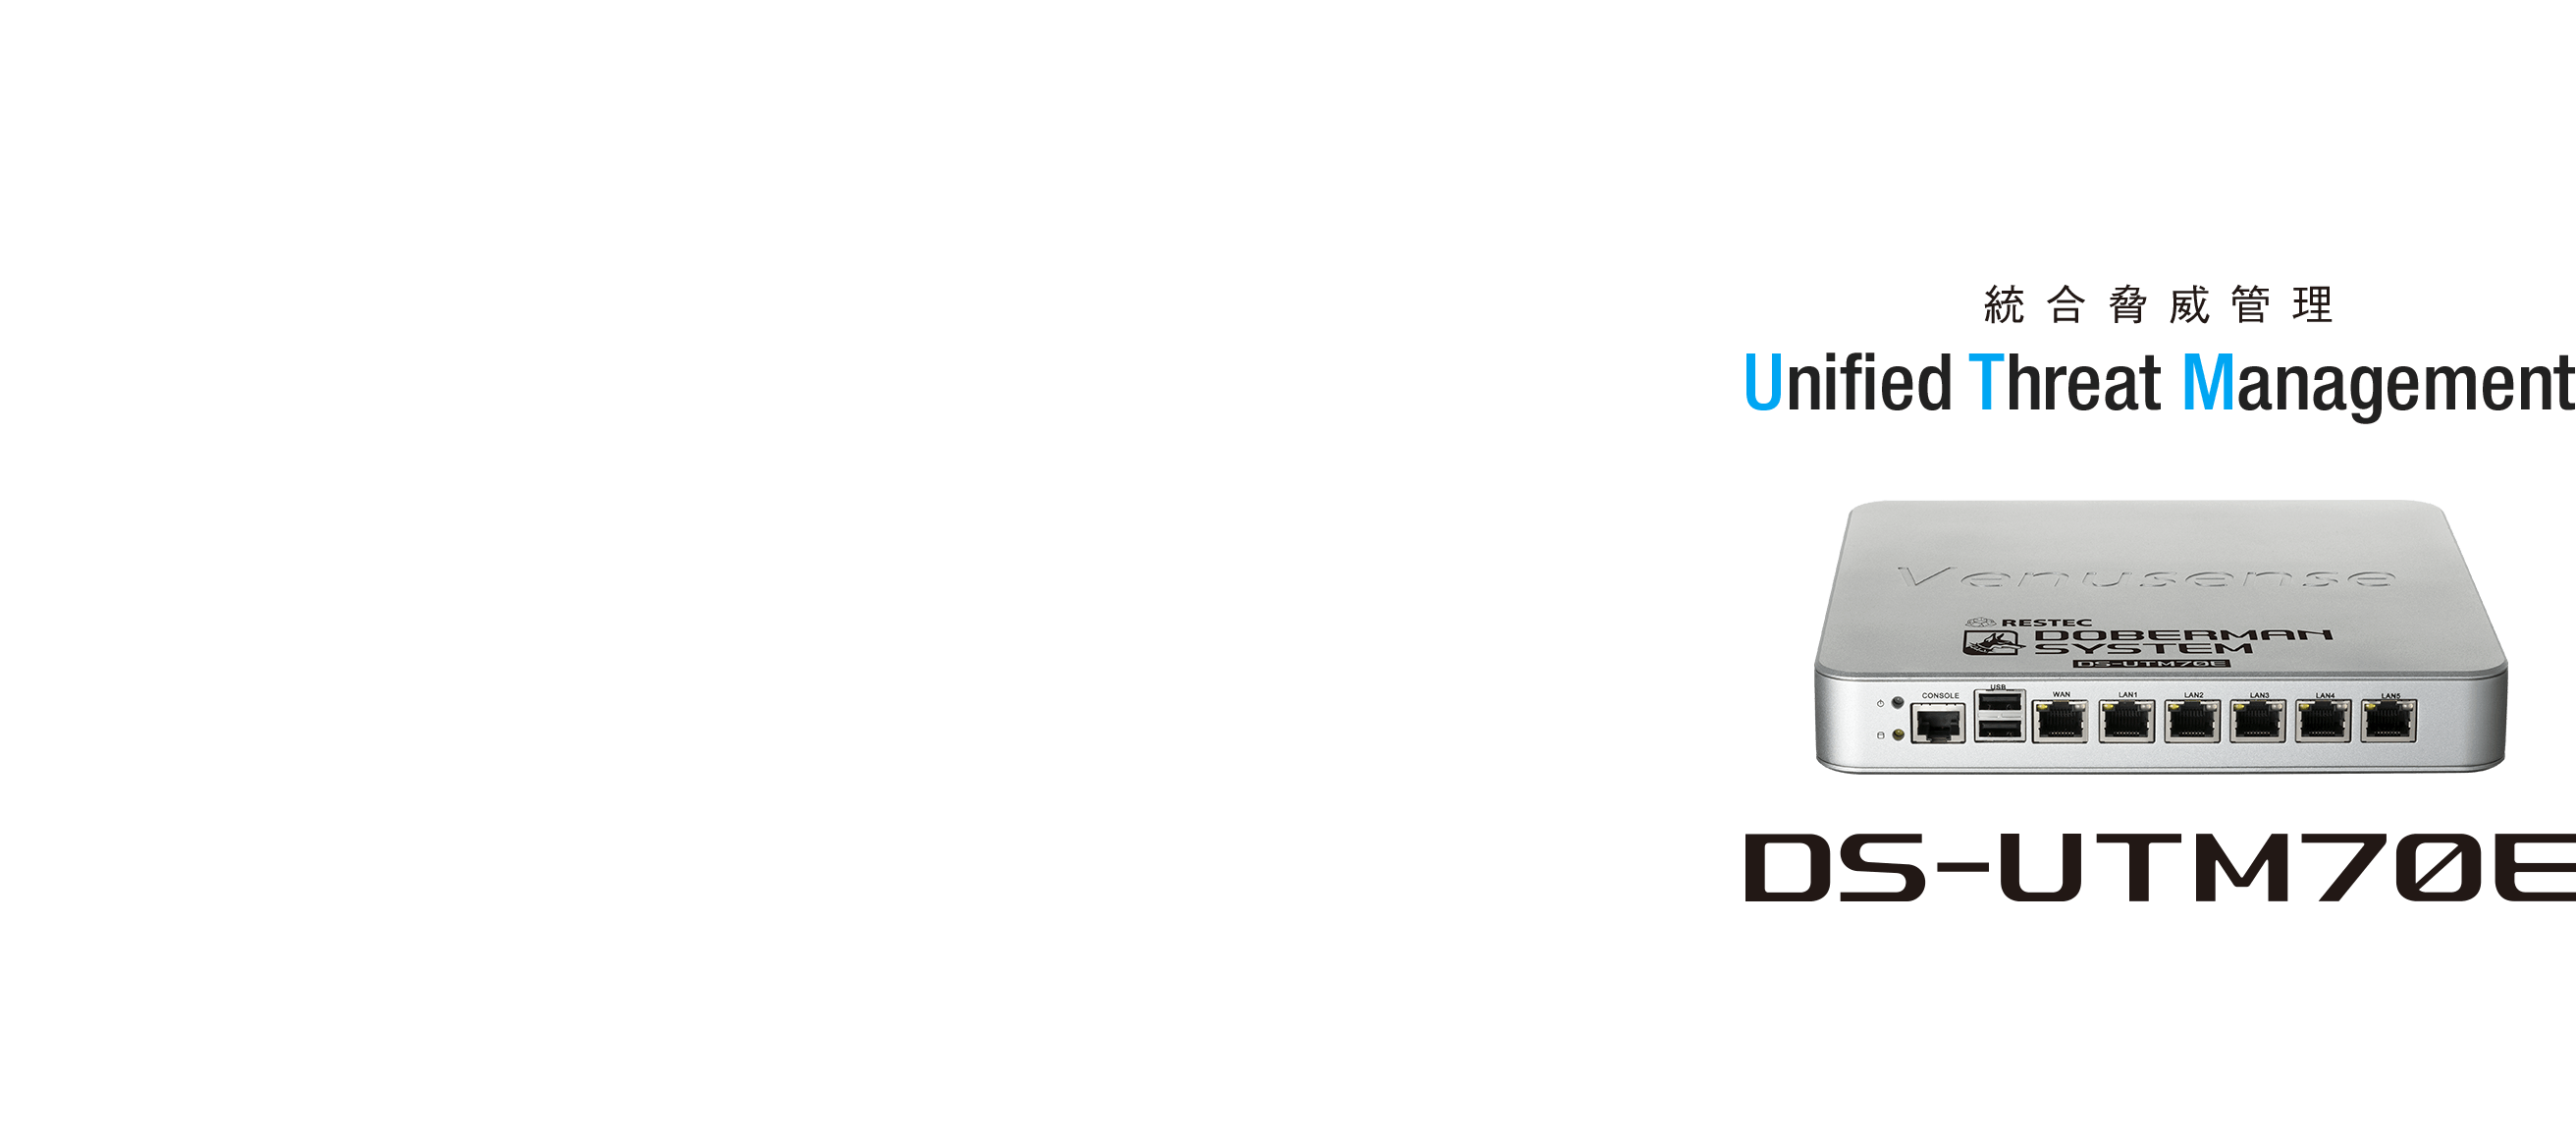 総合脅威管理 [Unified Threat Management] DS-UTM70E